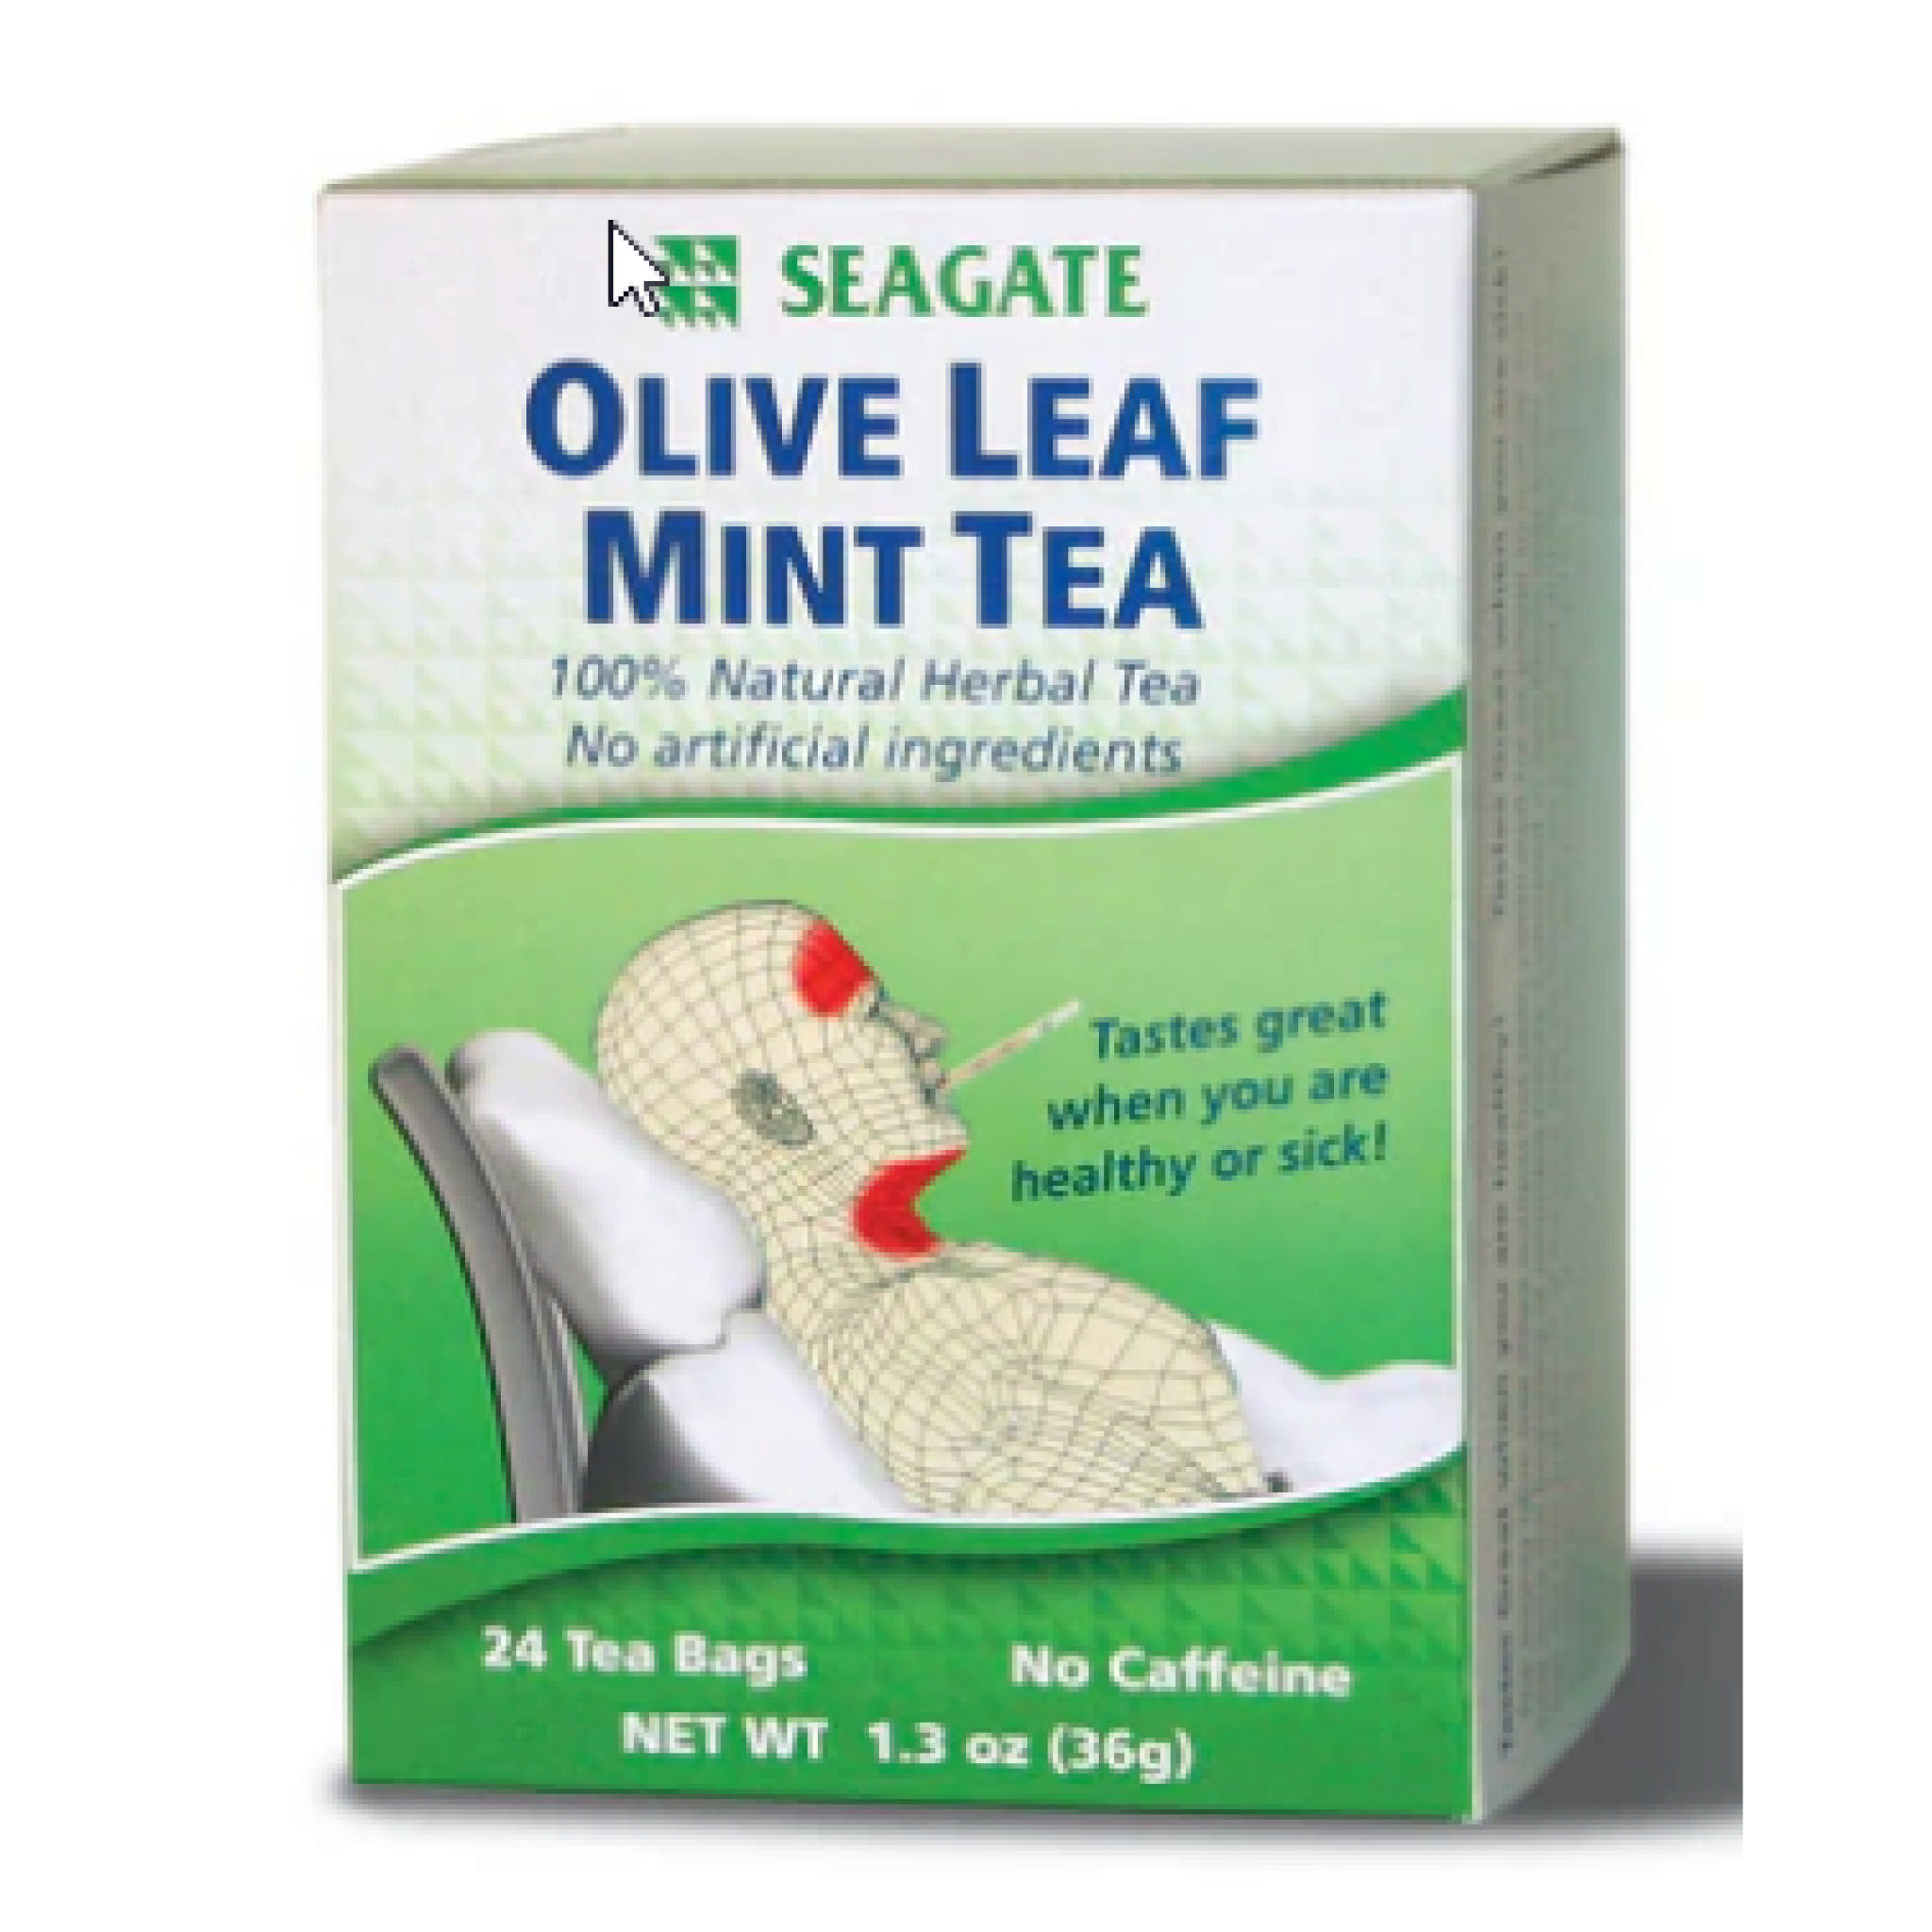 Seagate - Olive Leaf Mint Tea Bag